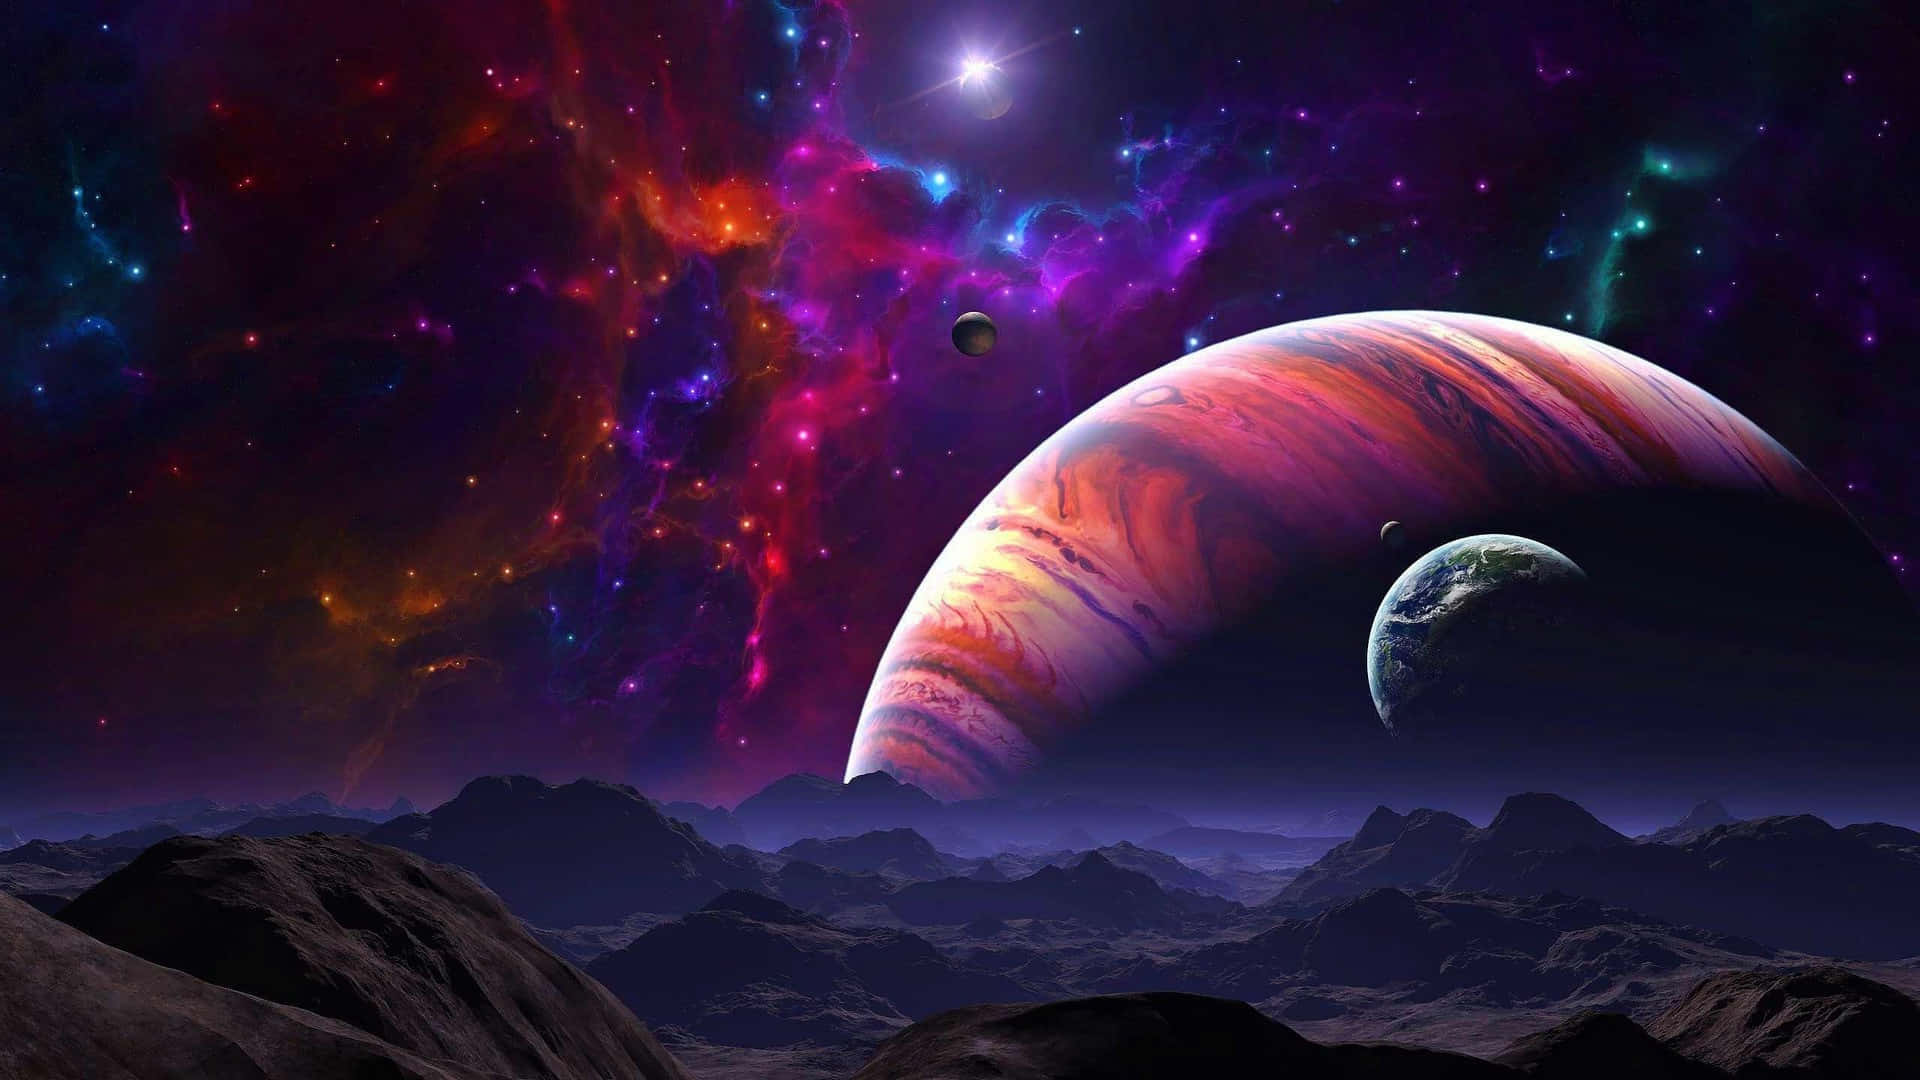 Explore a Mystical, Futuristic Fantasy Space Wallpaper